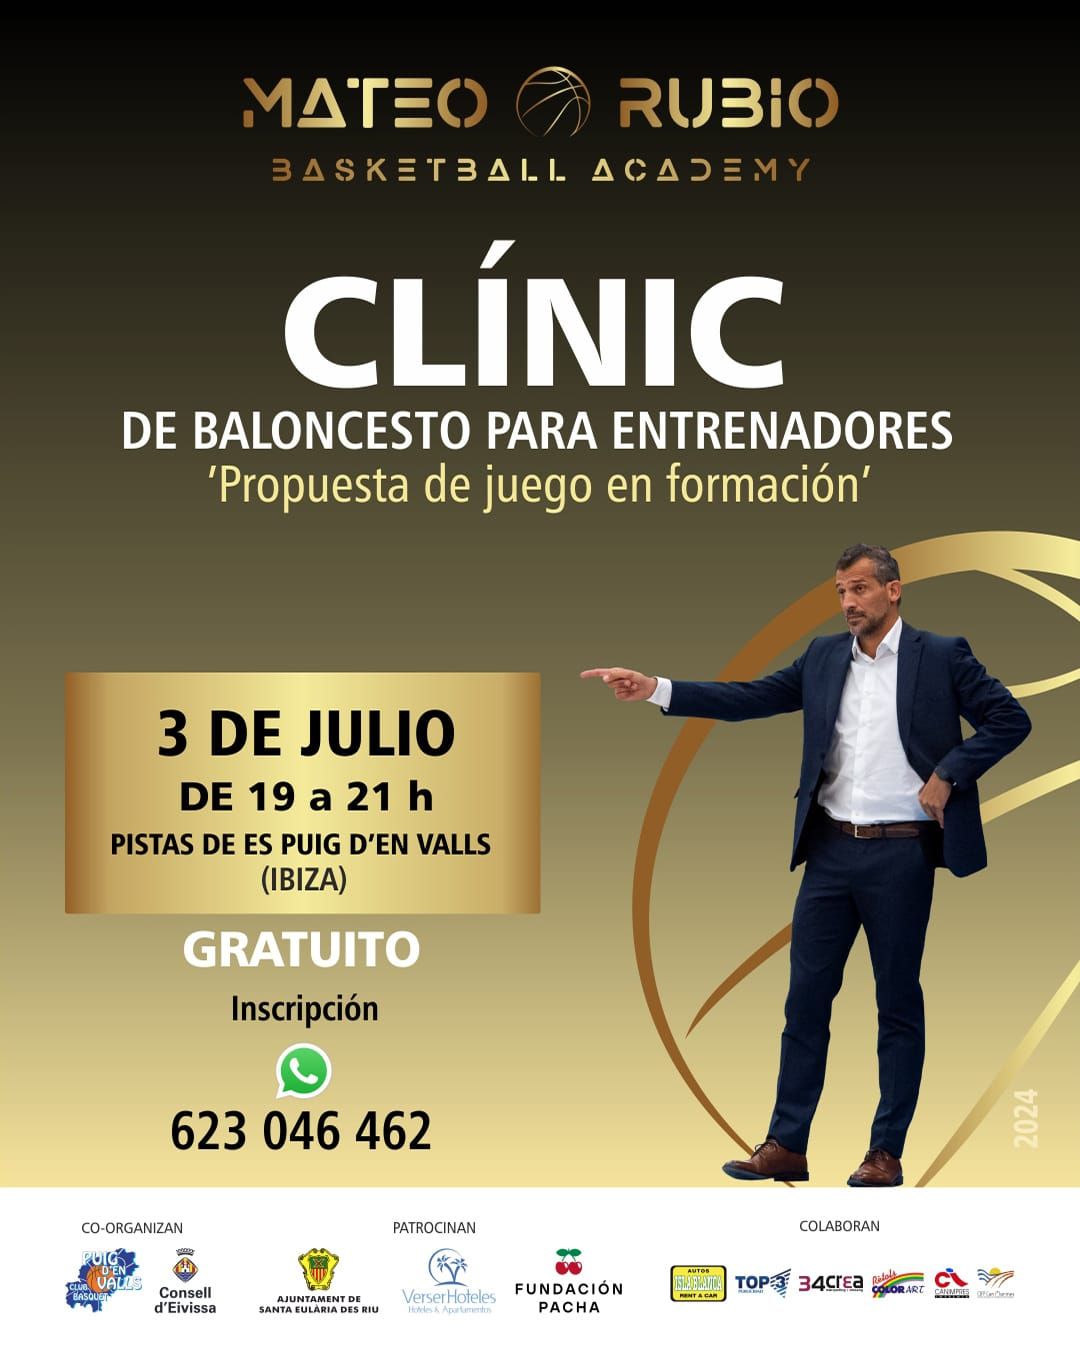 Cartel del Campus Mateo Rubio Basketball Academy